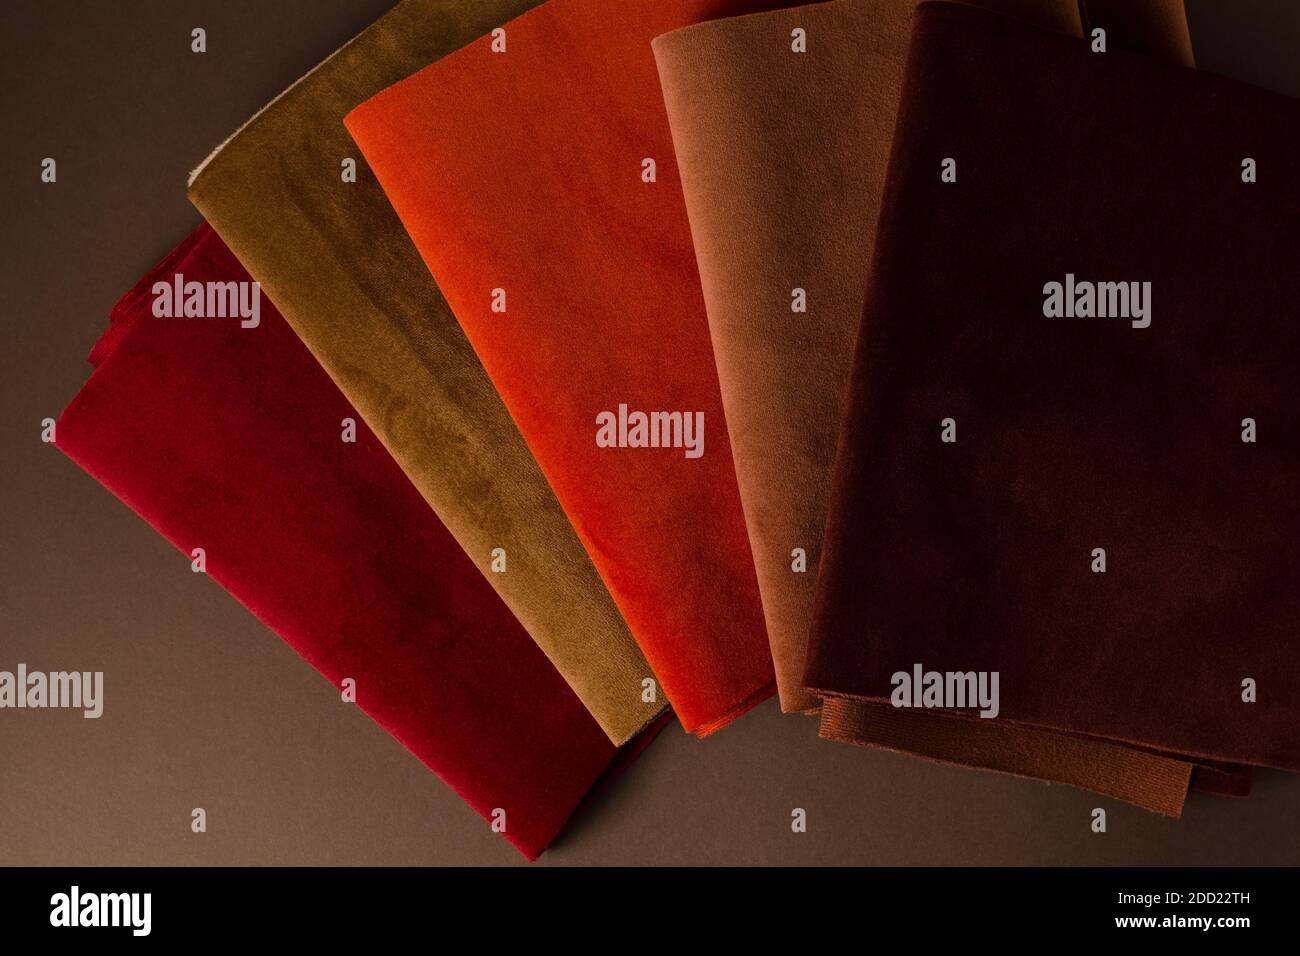 Une collection d'échantillons de textiles en velours rouge, marron et orange colorés. Arrière-plan de texture de tissu Banque D'Images